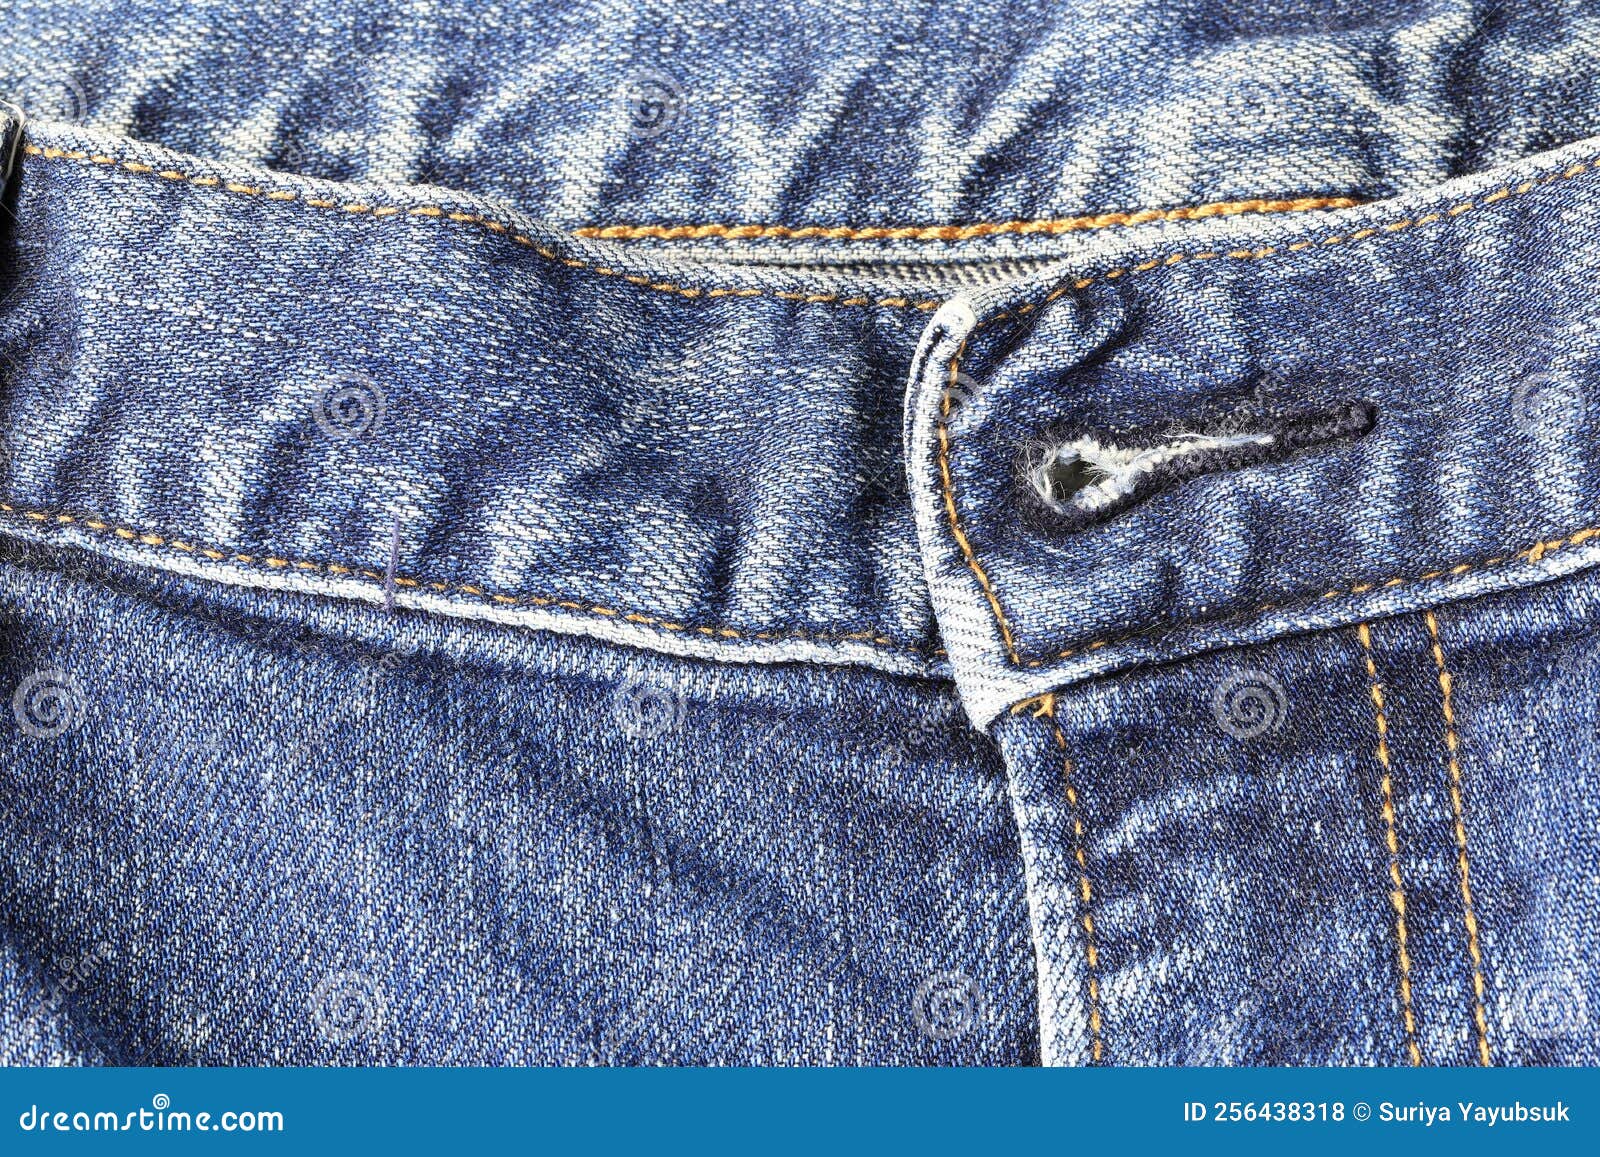 Closeup Jeans Texture Edge Detail, Wrinkles Blue Jeans Texture, Denim ...